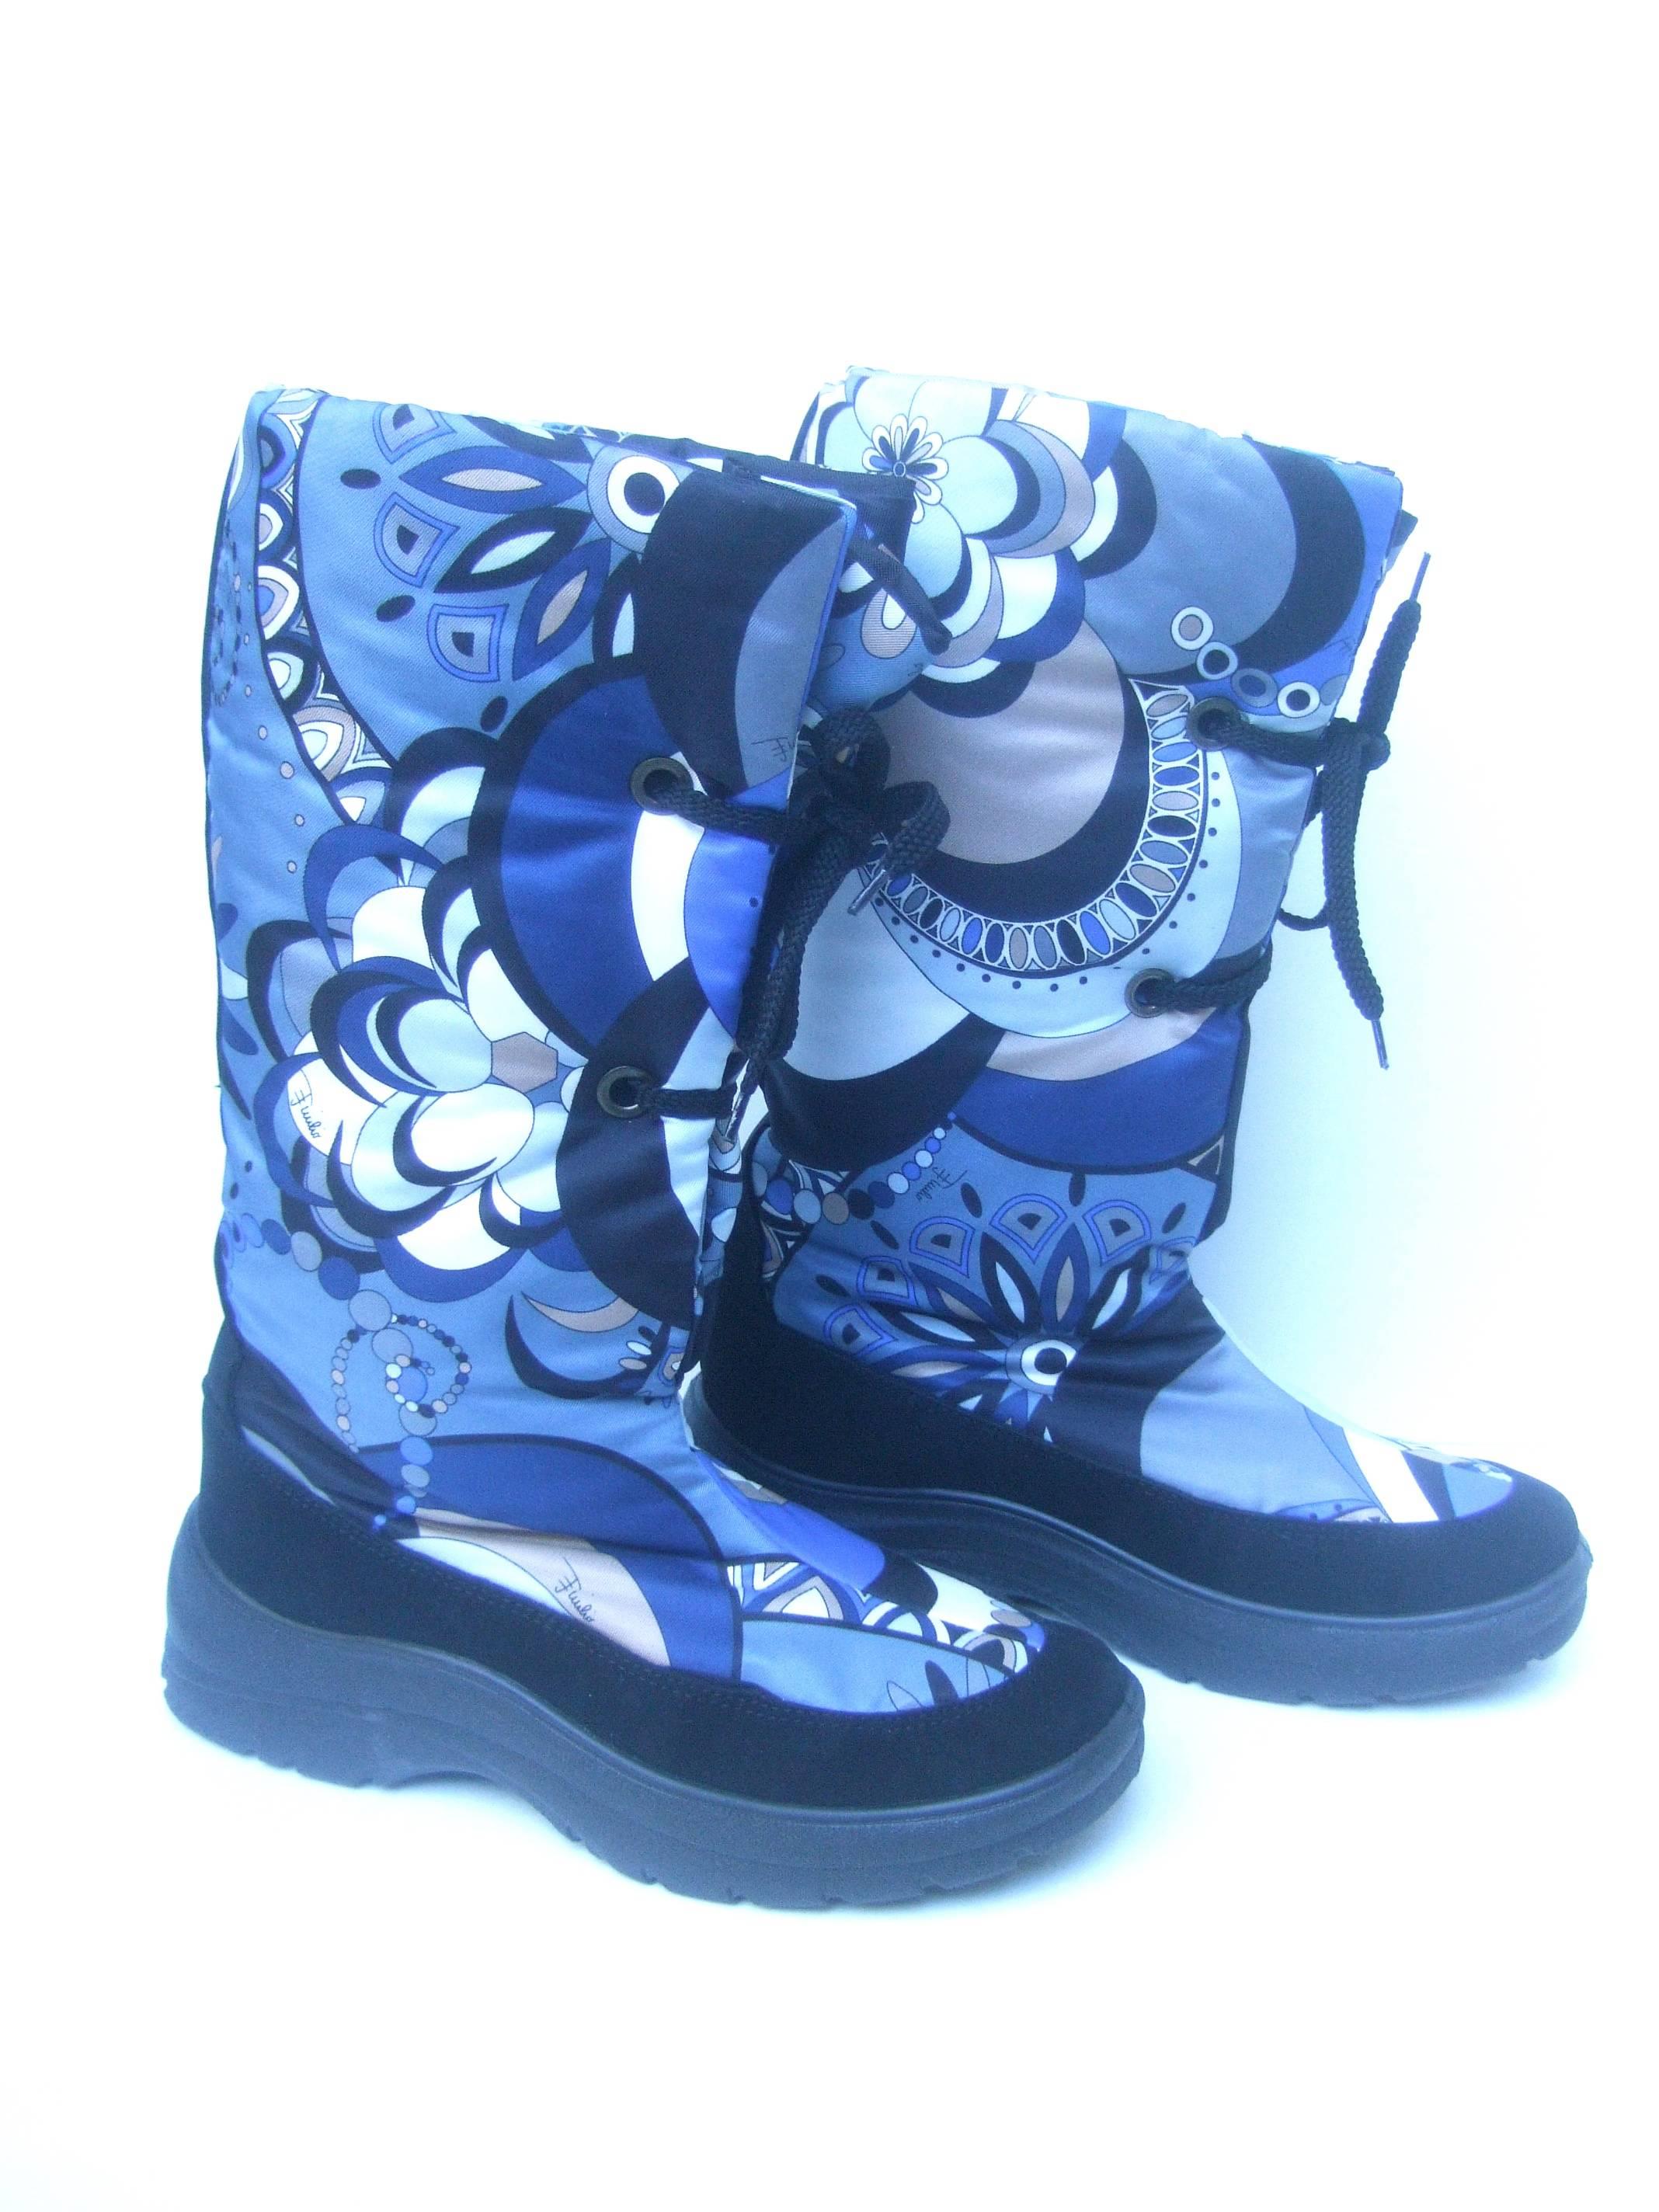 Blue Emilio Pucci Bold Nylon Print Ski Boots Size 40 